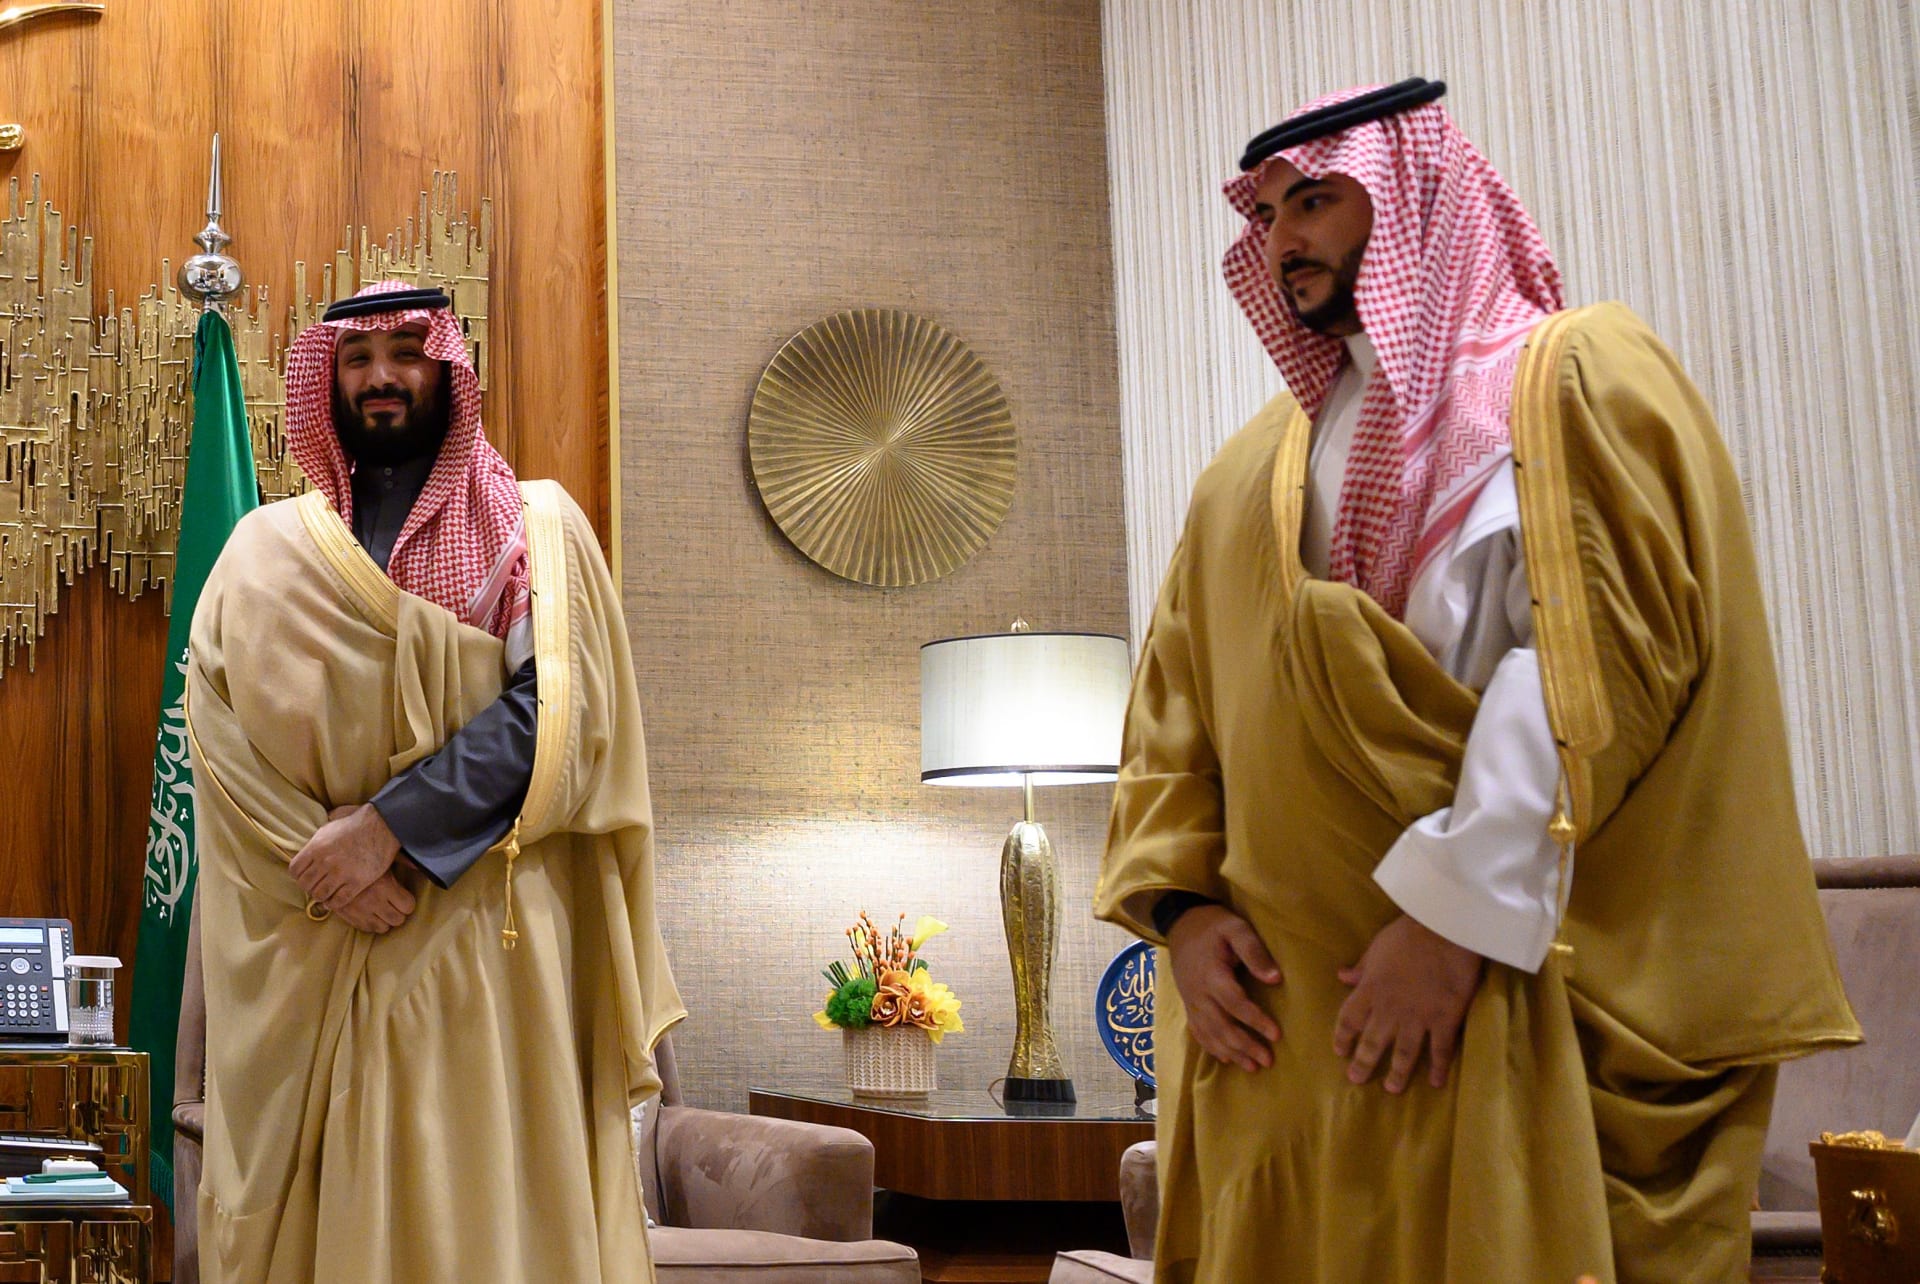 السعودية خالد بن سلمان يجري اللقاء الأول له مع مسؤول خارجي كوزير للدفاع